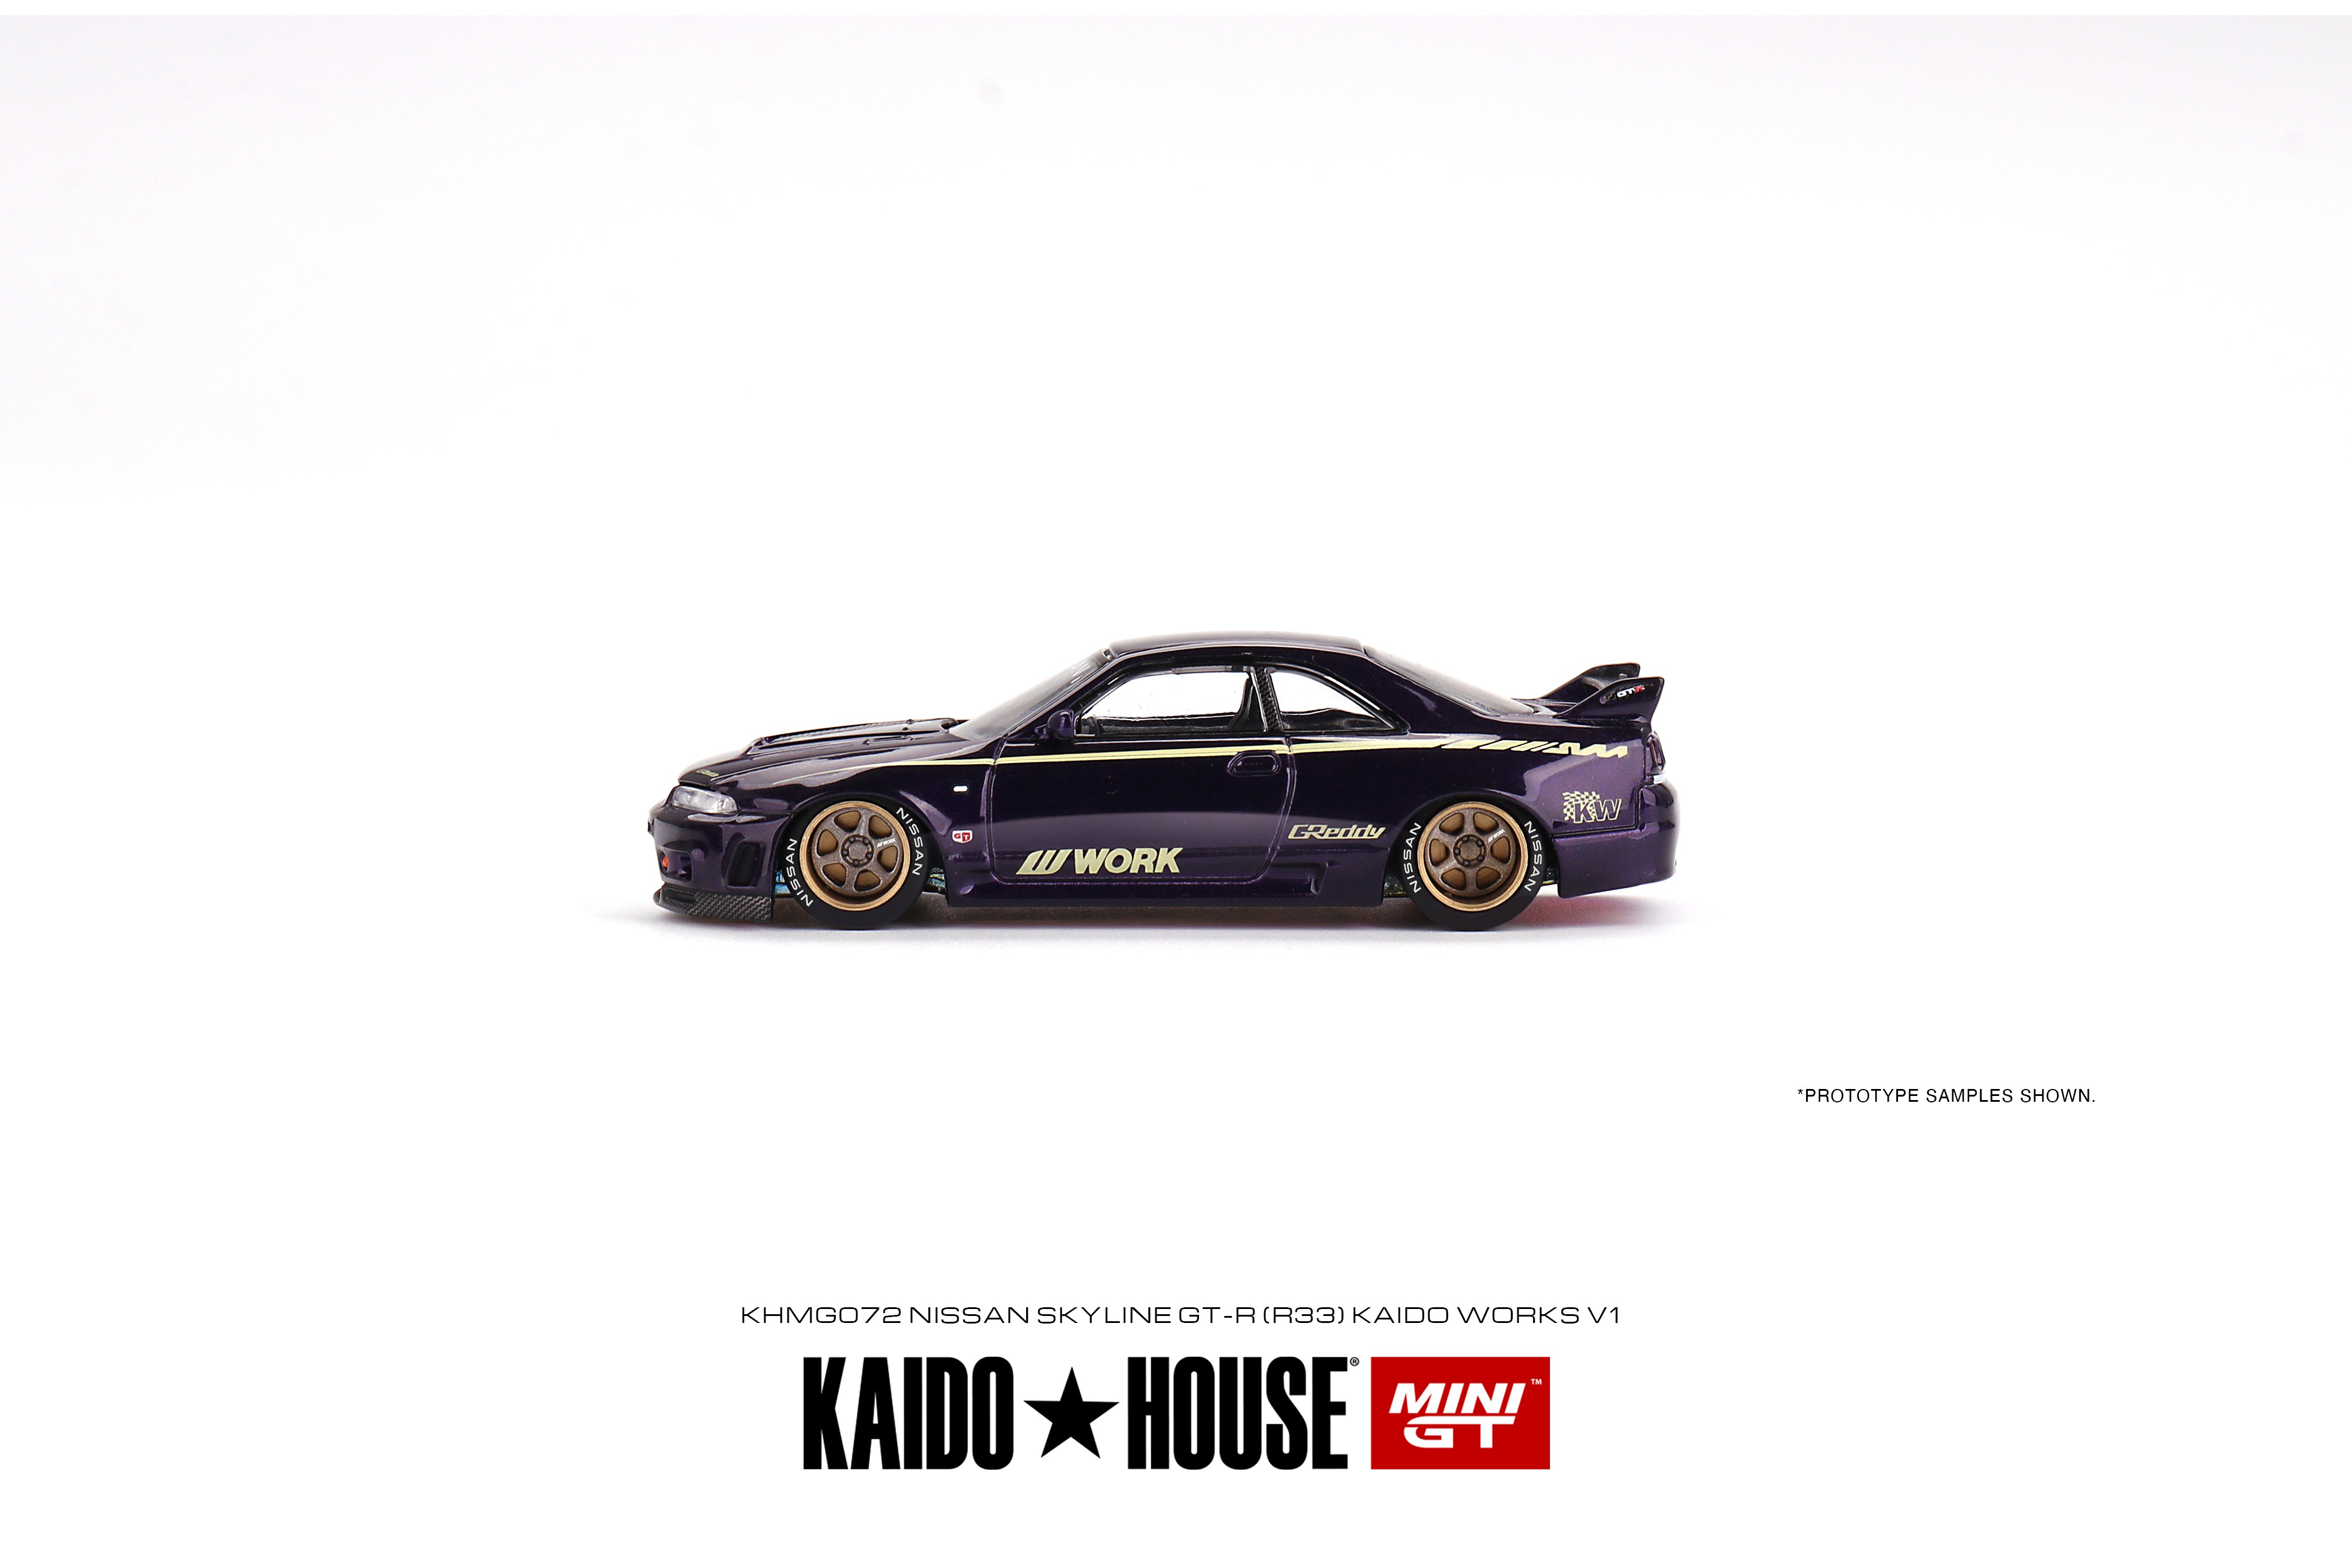 Mini GT Kaido House - Nissan Skyline GT-R (R33) Kaido Works V1 - KHMG072 -  1:64